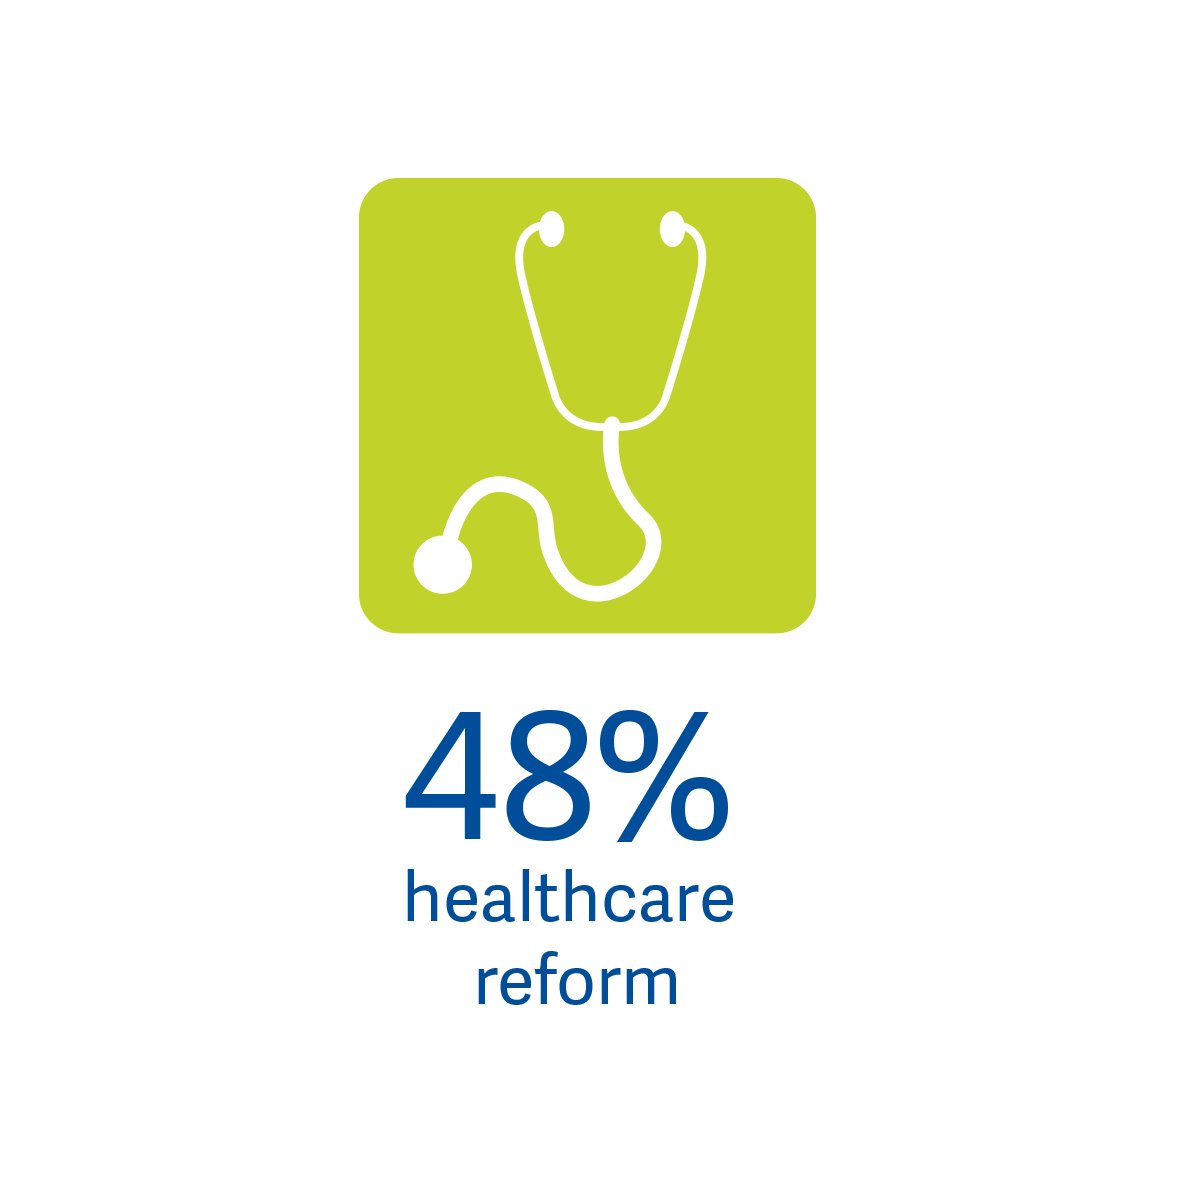 48% Healthcare Reform